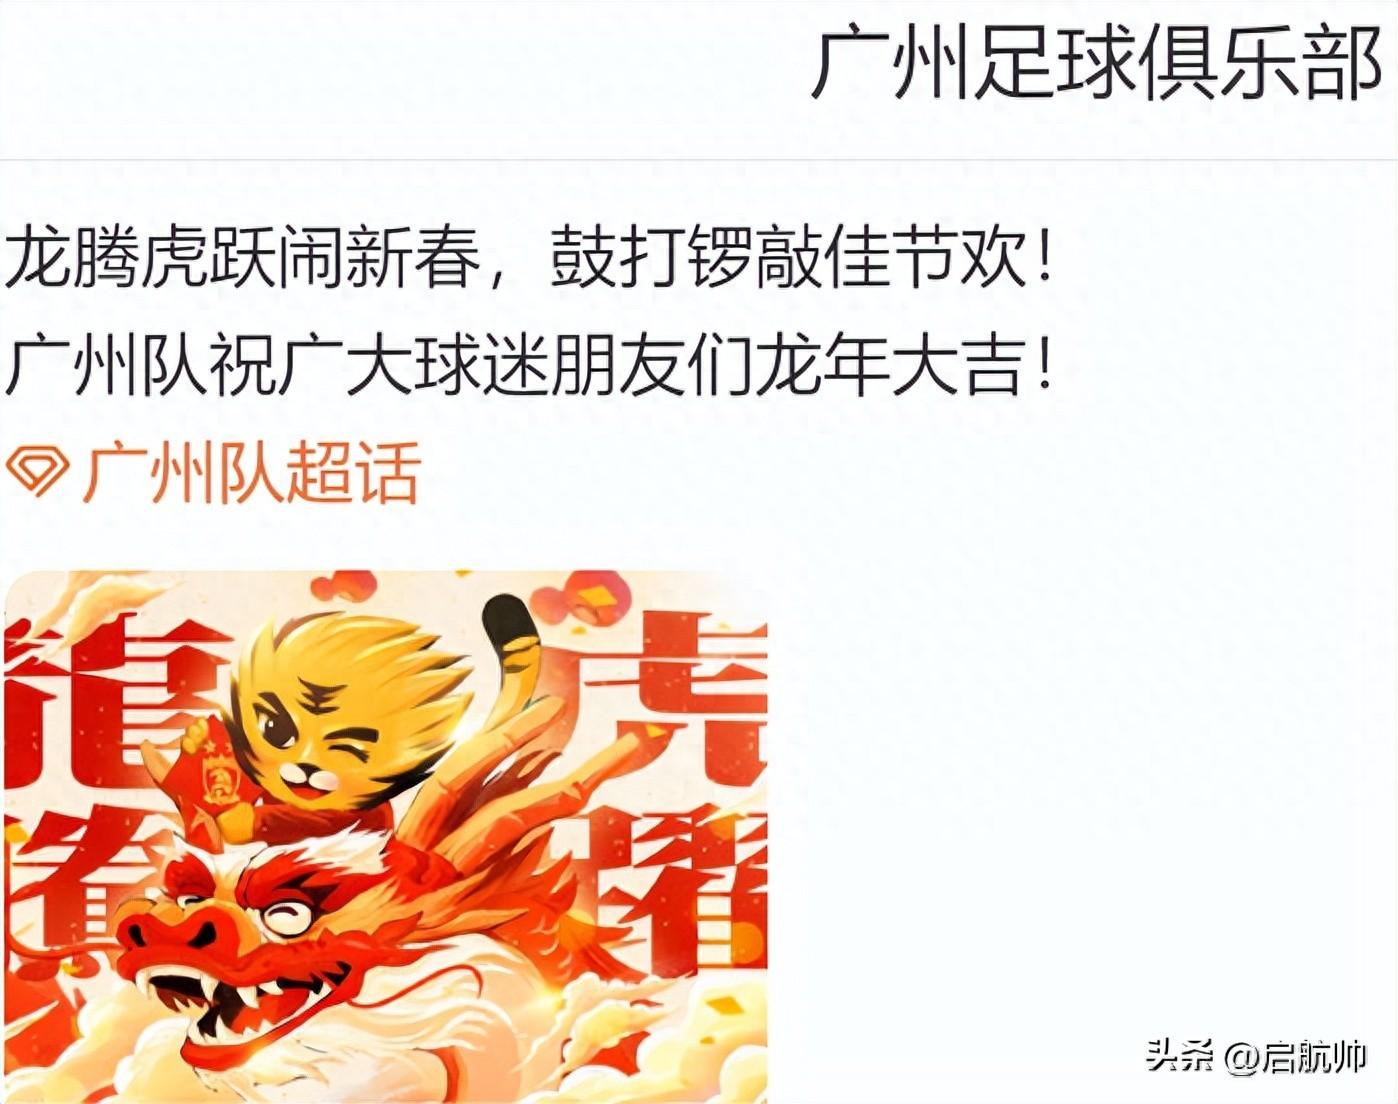 通过海报和视频阐述广州队在来年的“红火预测”